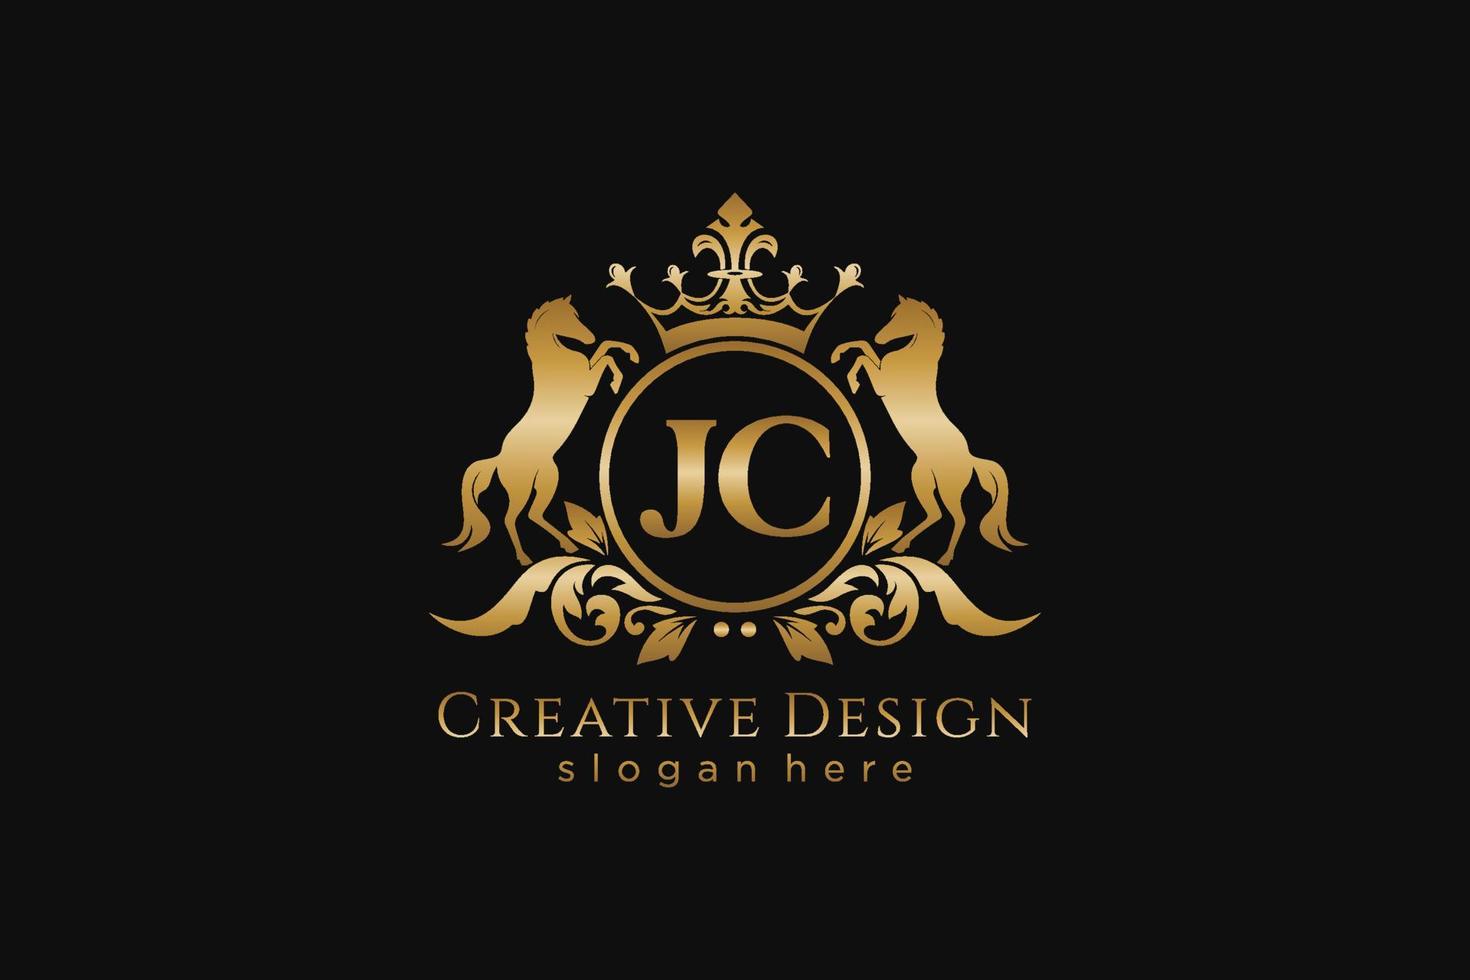 cresta dorada retro jc inicial con círculo y dos caballos, plantilla de insignia con pergaminos y corona real - perfecto para proyectos de marca de lujo vector